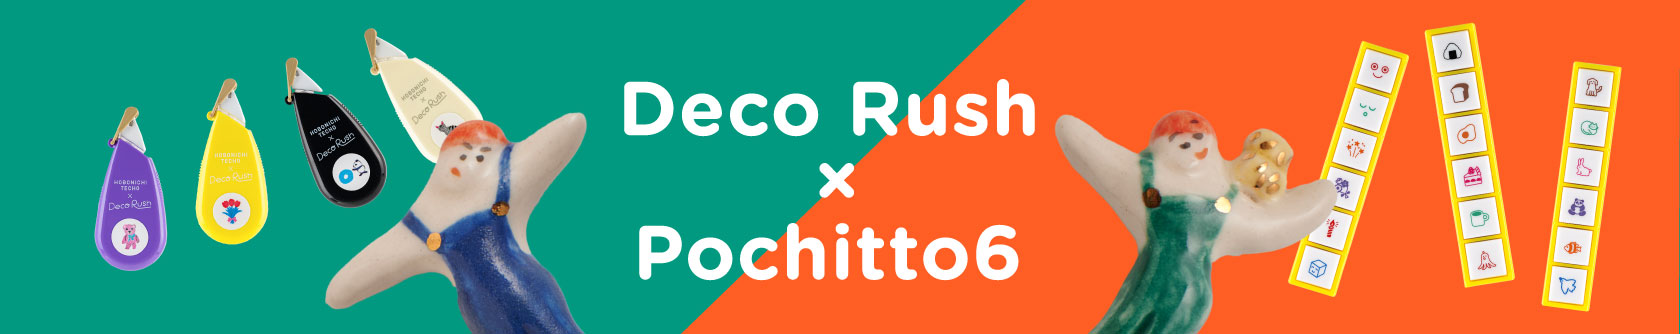 Deco Rush x Pochitto6